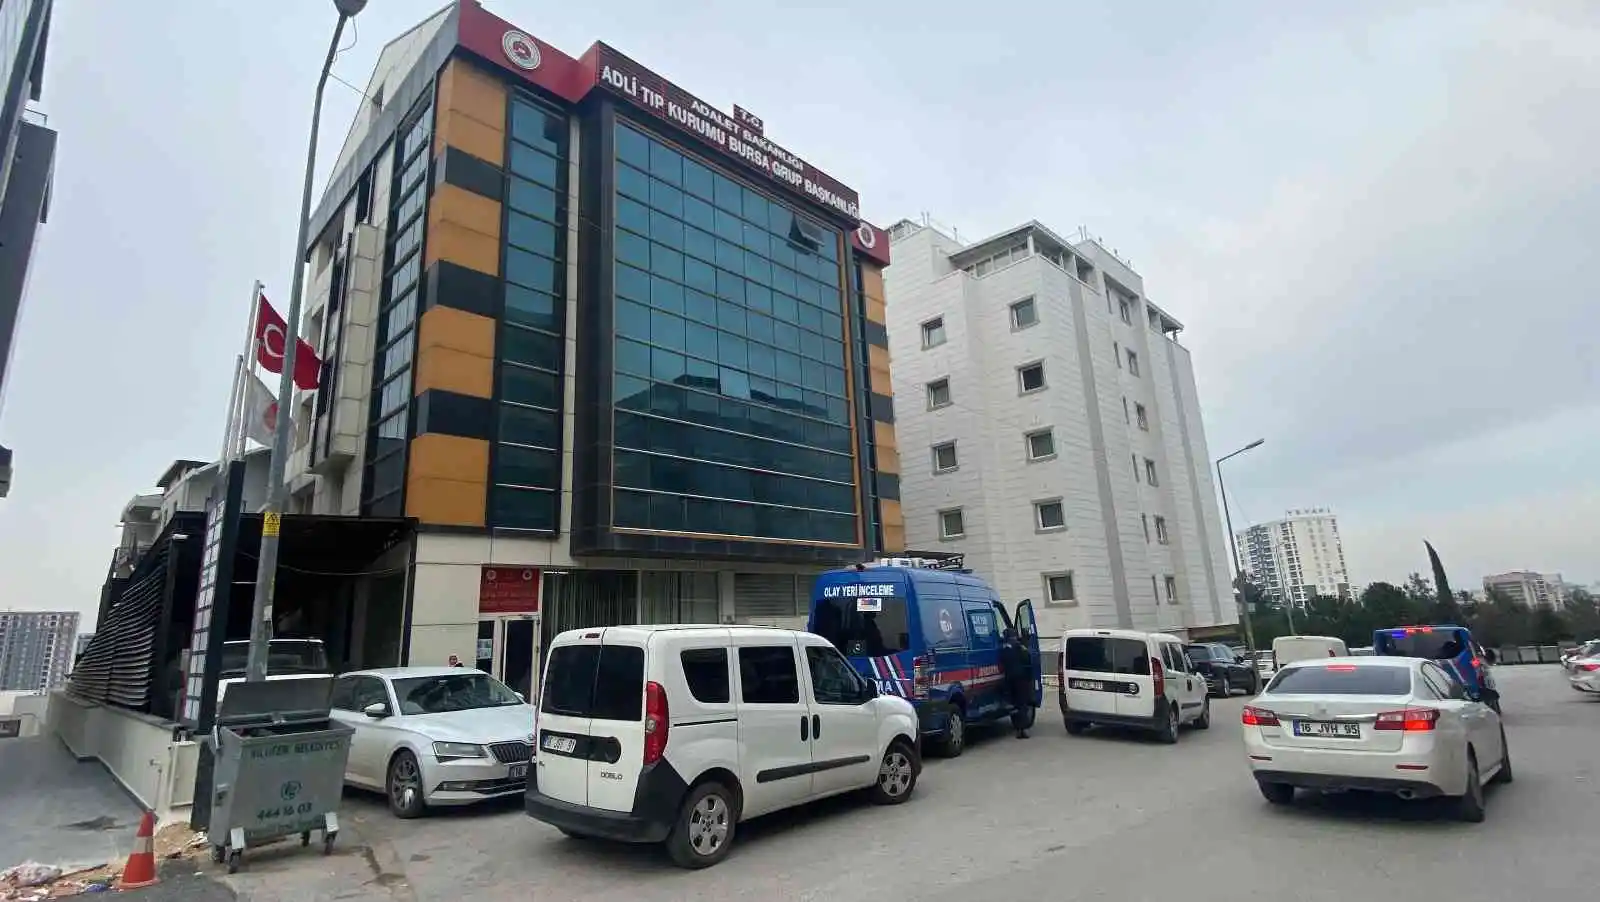 Bursa'da hayvan gübresinin içinde çıkan kadın cesediyle alakalı flaş gelişme
